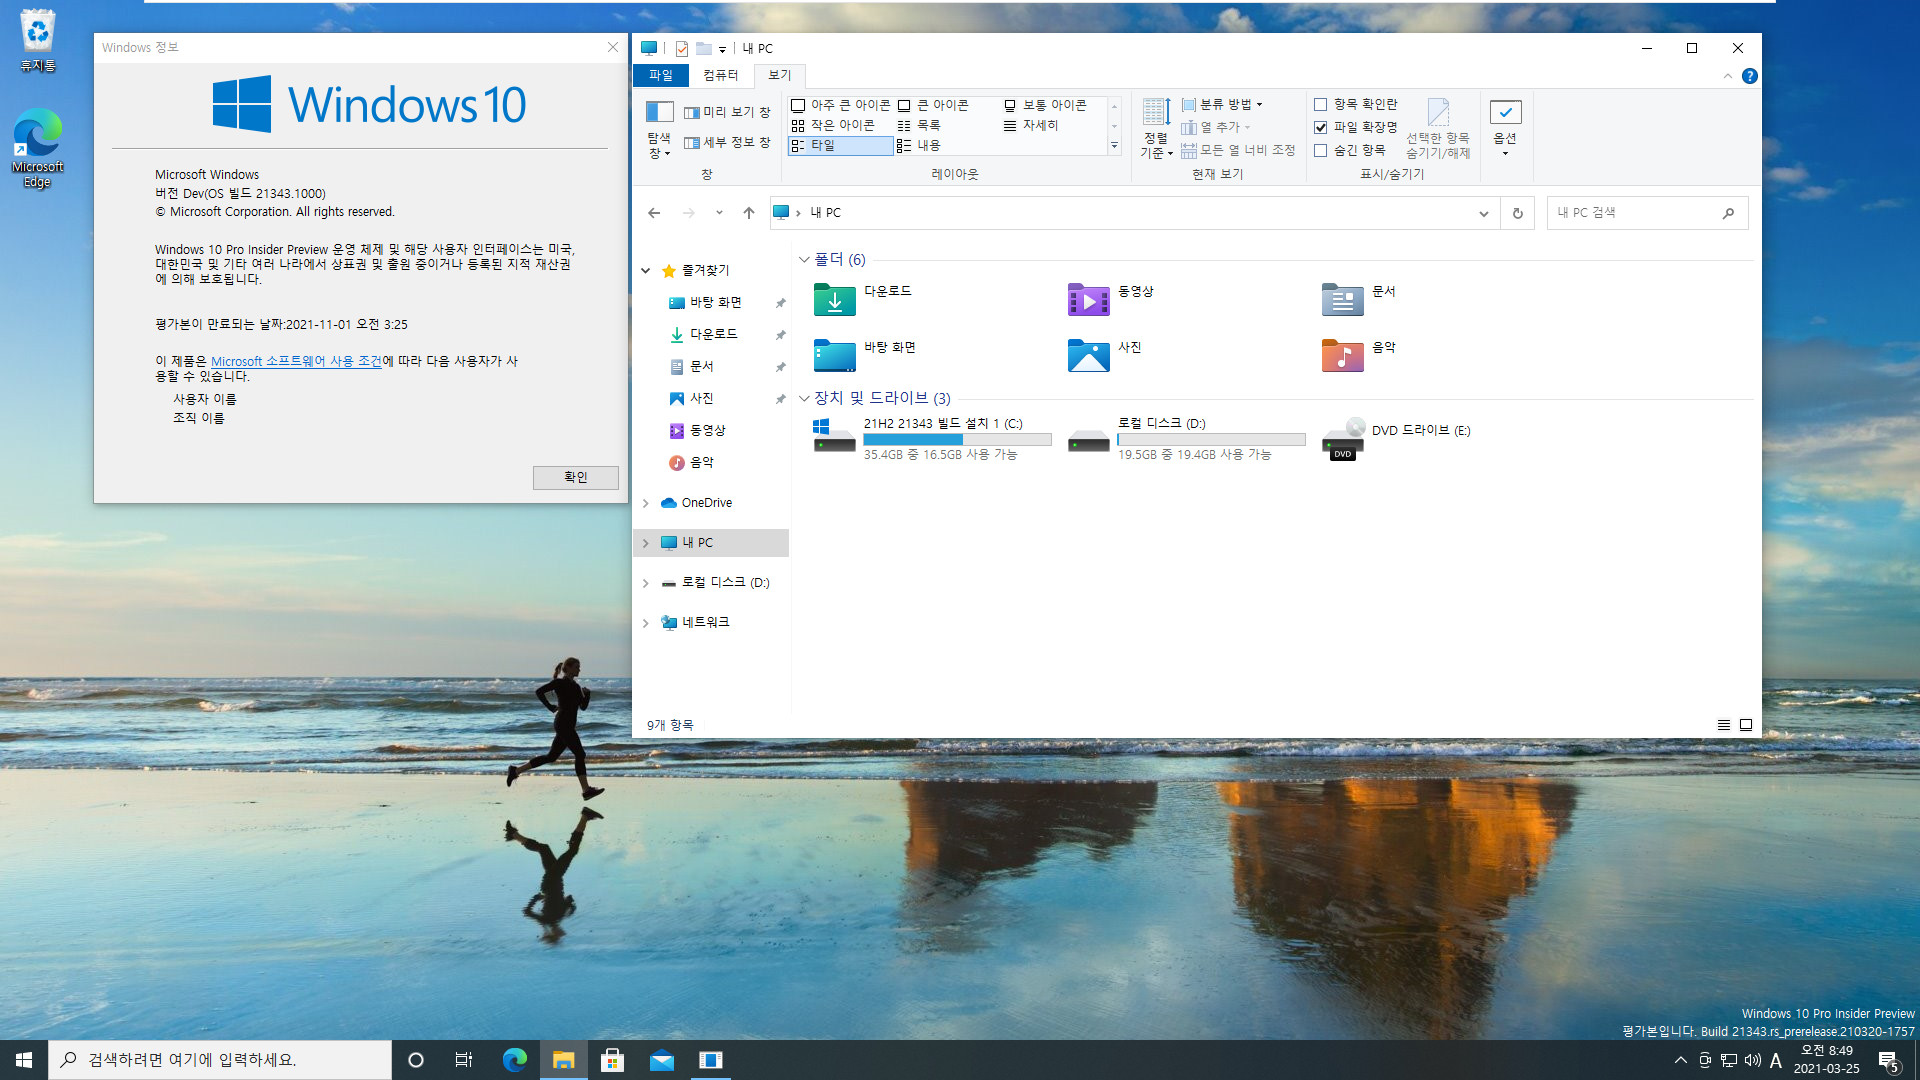 Windows 10 인사이더 프리뷰 - 버전 Dev (버전 21H2 추정), (OS 빌드 21343.1000) PRO x64 설치 테스트 - 아이콘들이 많이 변경되었네요 2021-03-25_084951.jpg